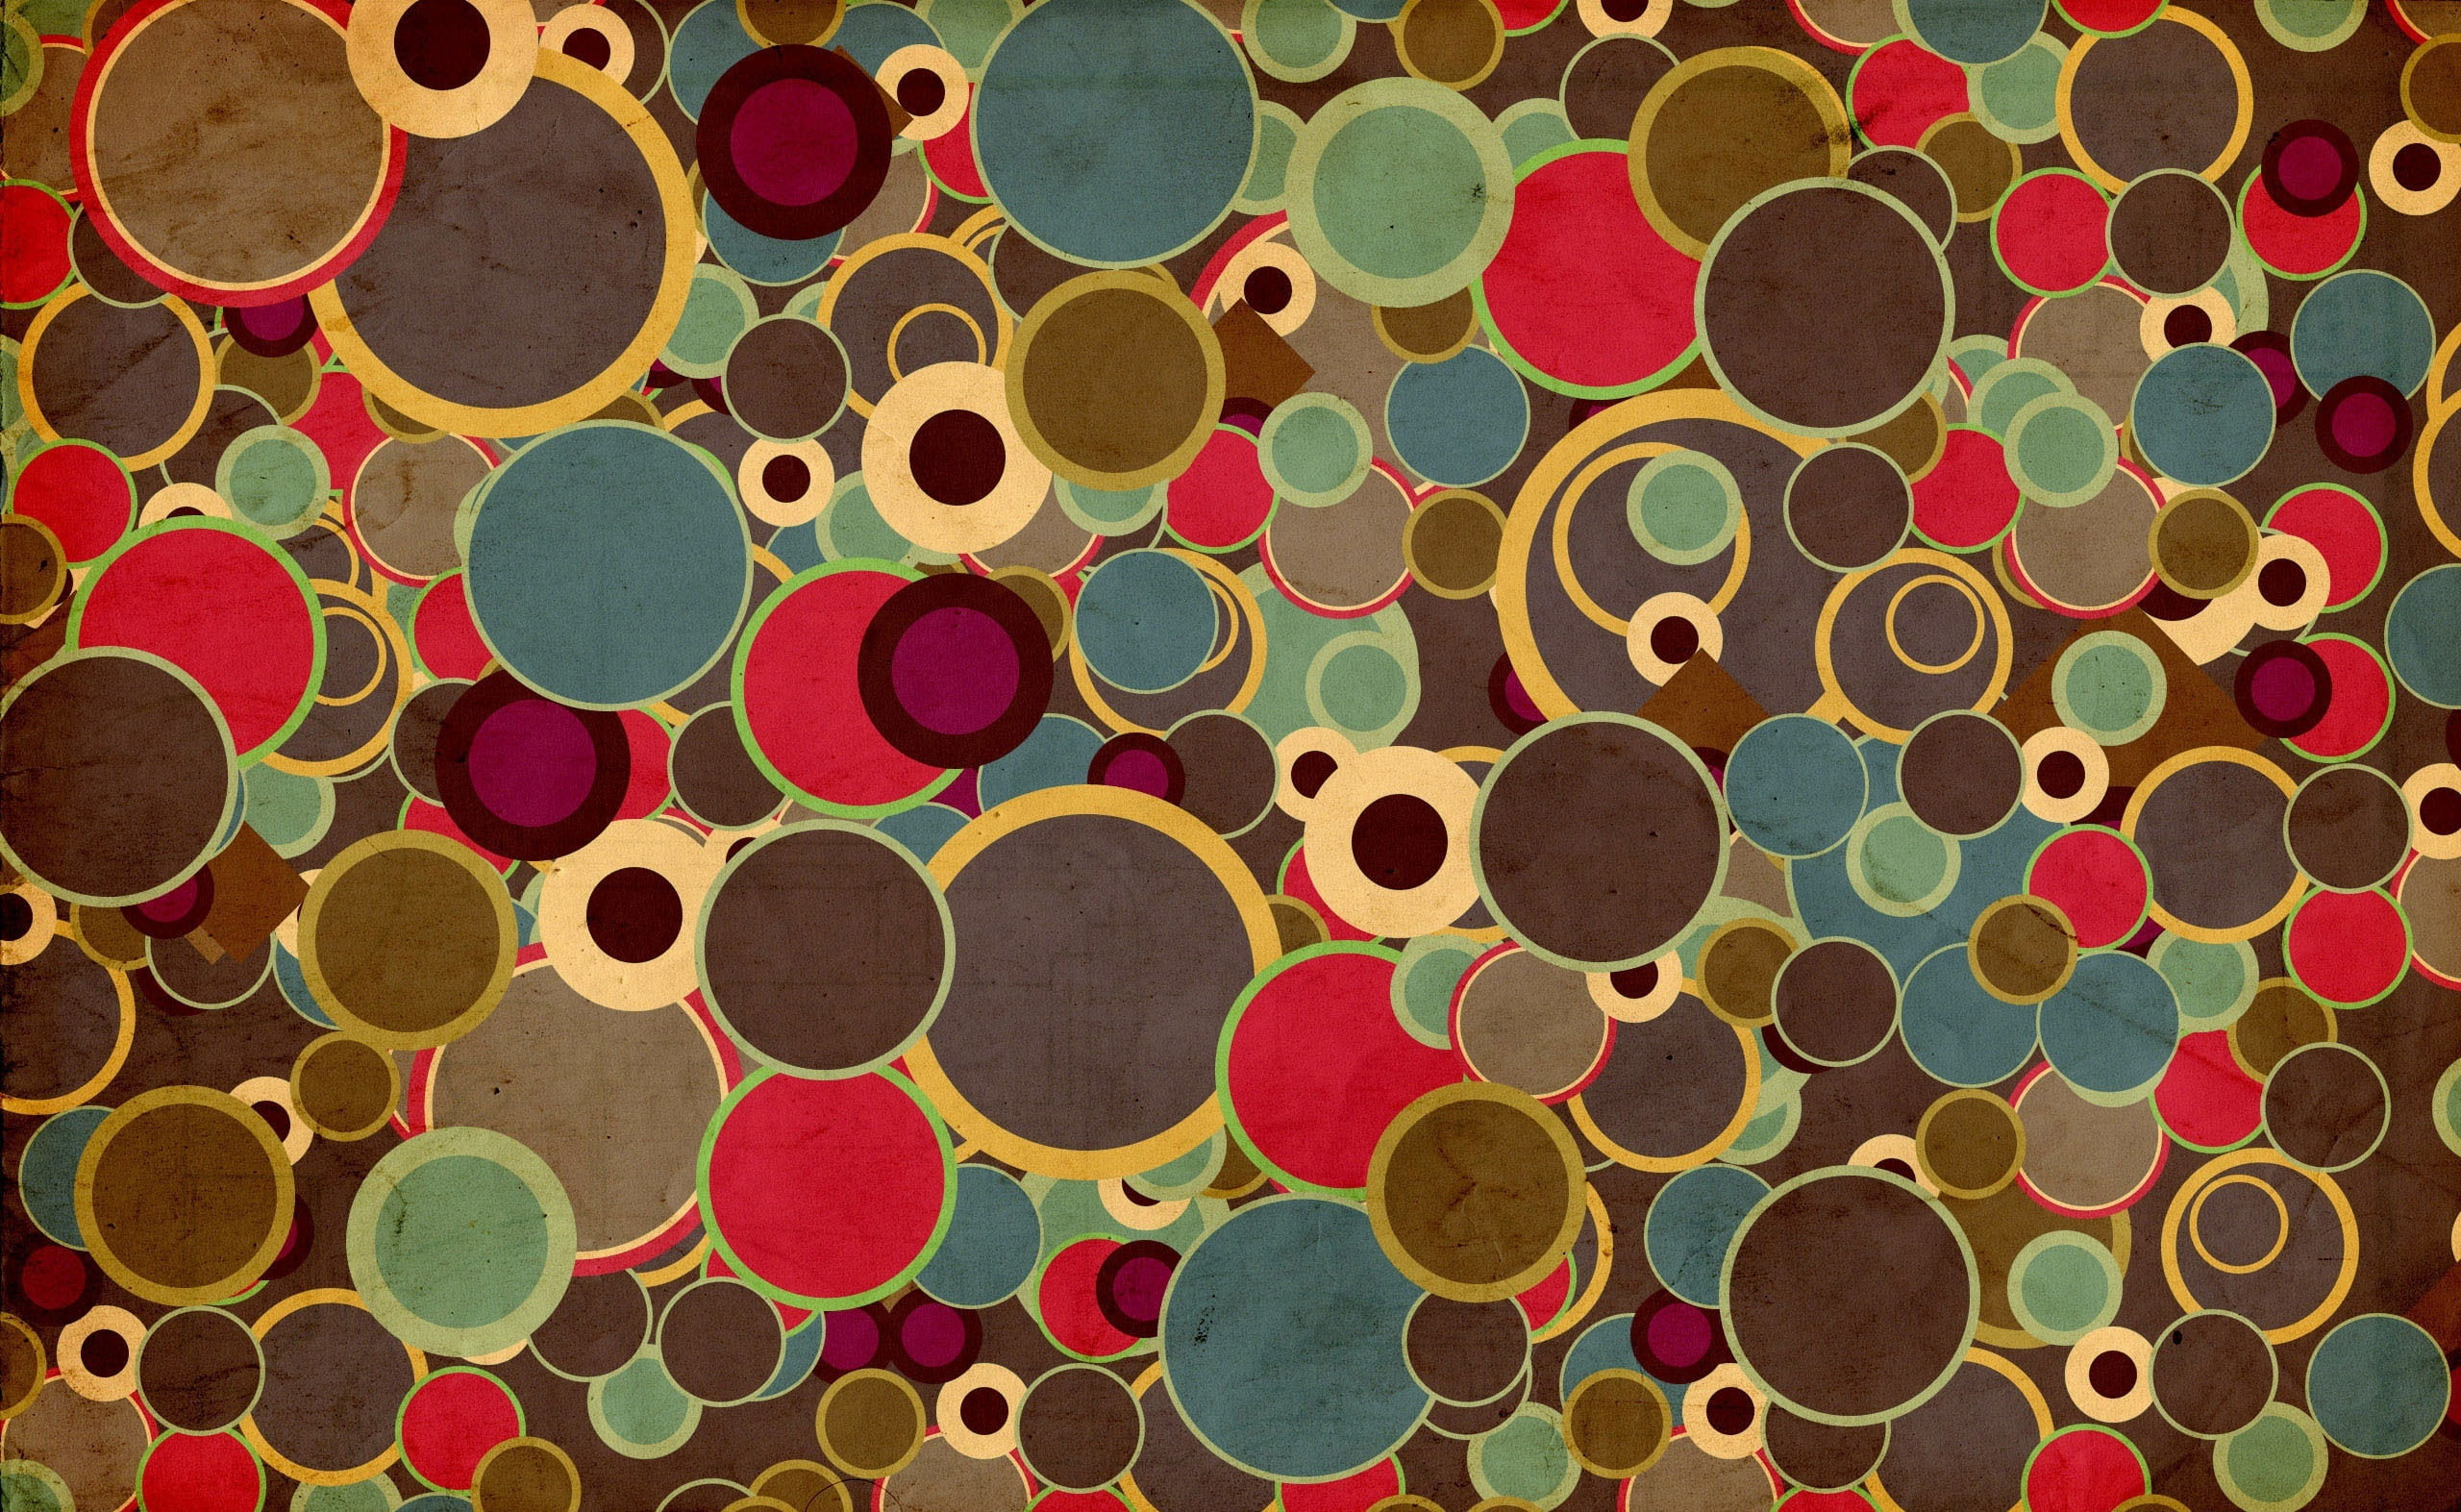 70's Design wallpaper, assorted-color polka-dot lot illustration, Vintage